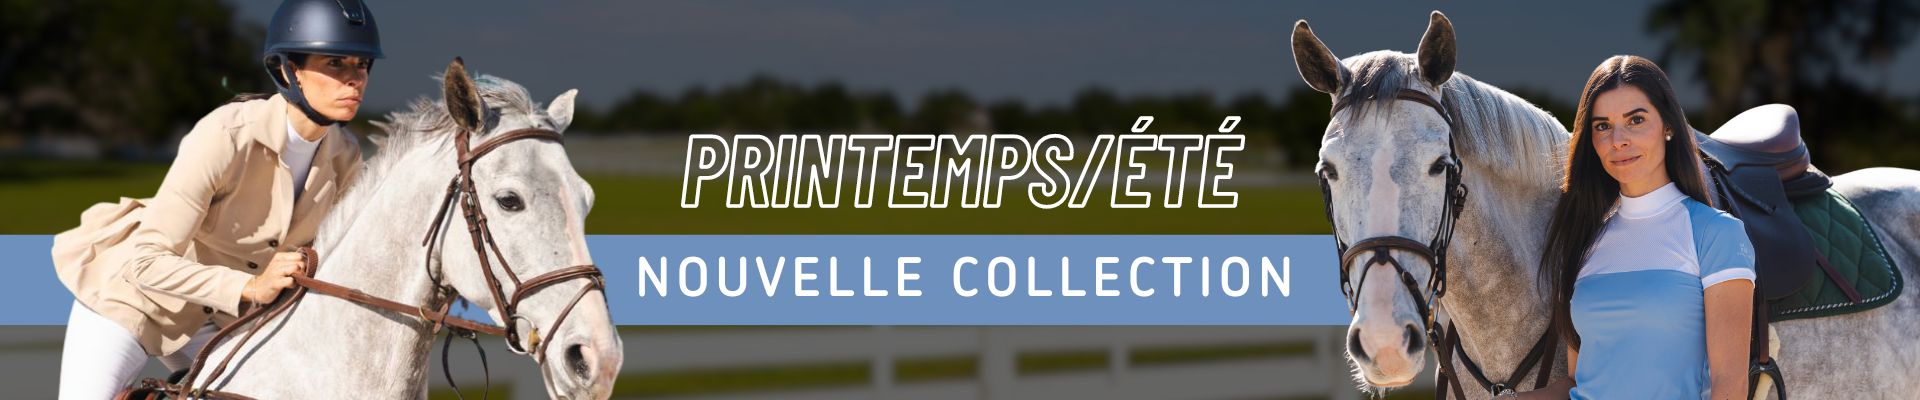 Printemps/Été nouvelle collection banner